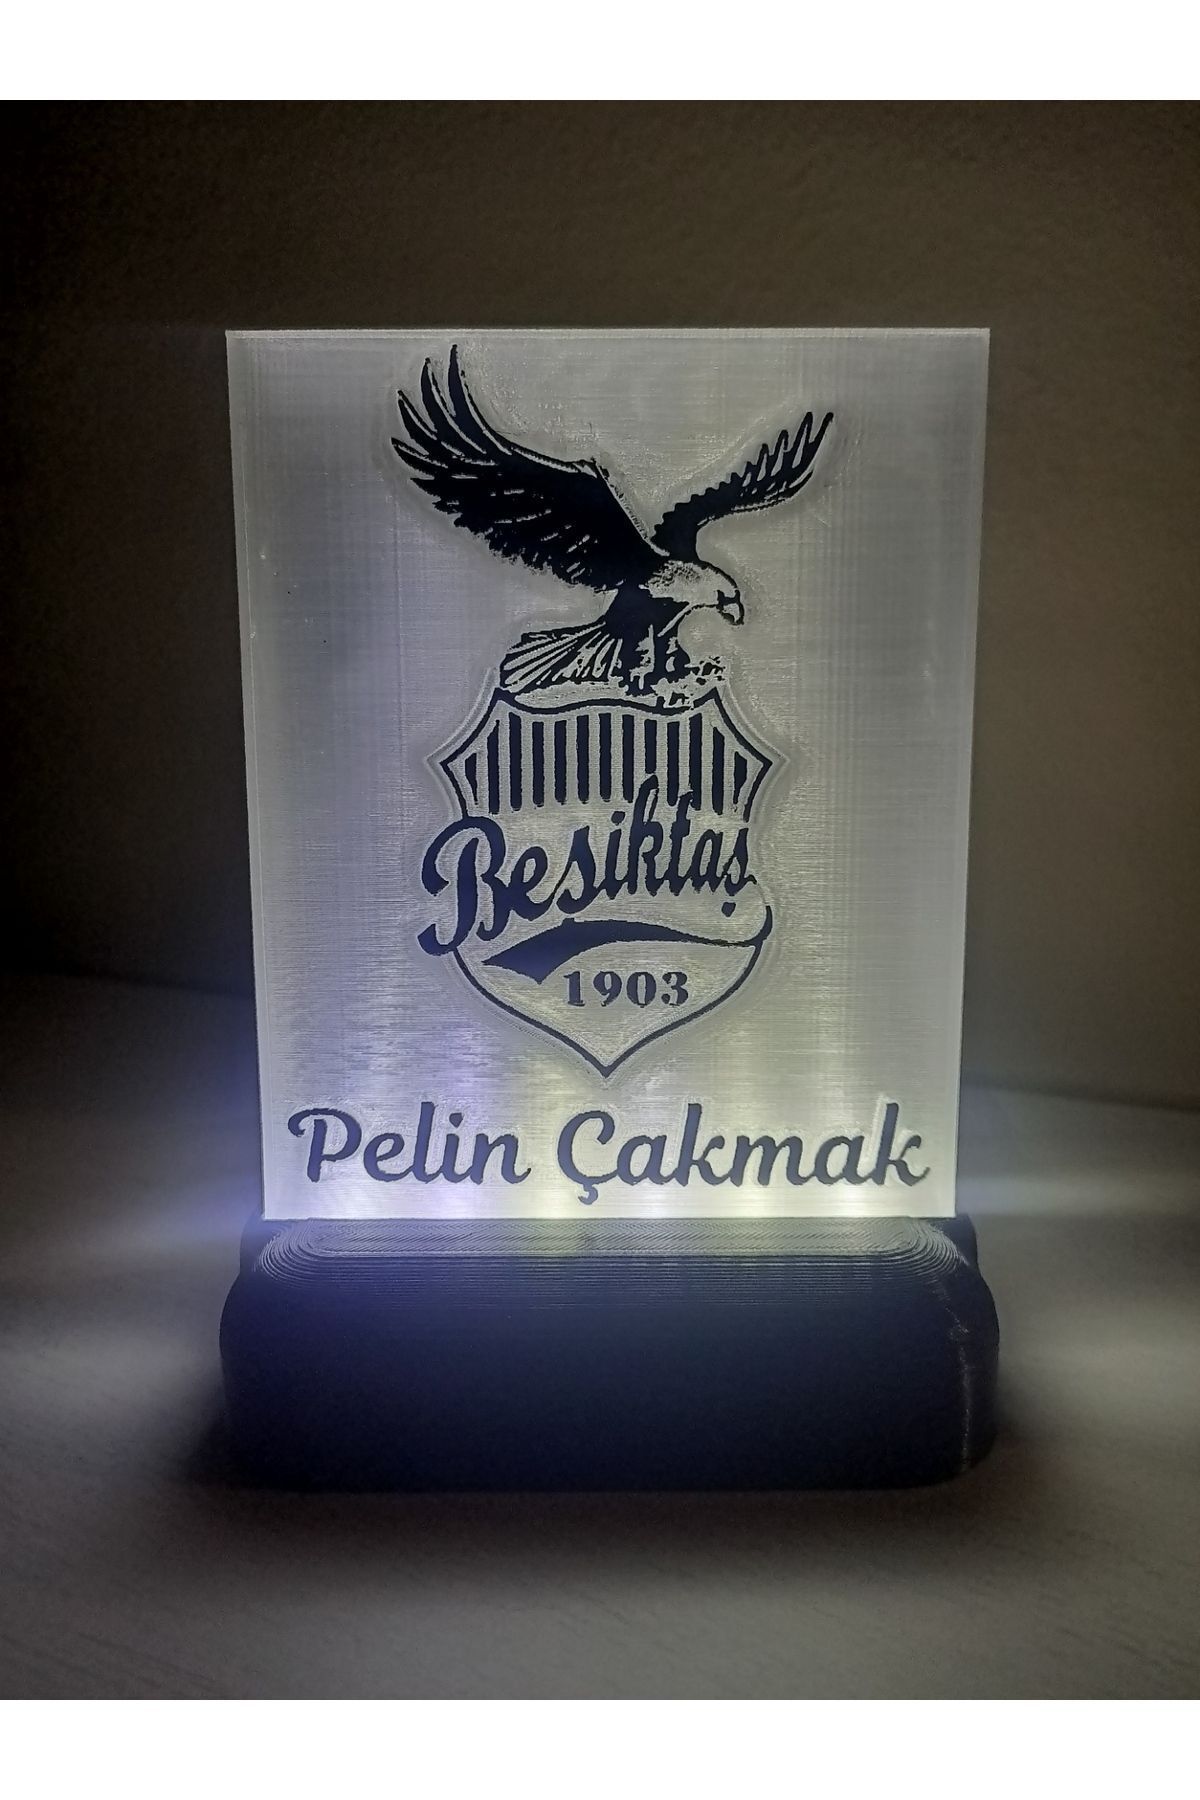 DÖNÜŞÜM ATÖLYESİ Kişiye Özel İsimli Beşiktaş Taraftar Logolu Dekoratif Led Lamba Kablolu Adaptörlü Geri Dönüşüm PET